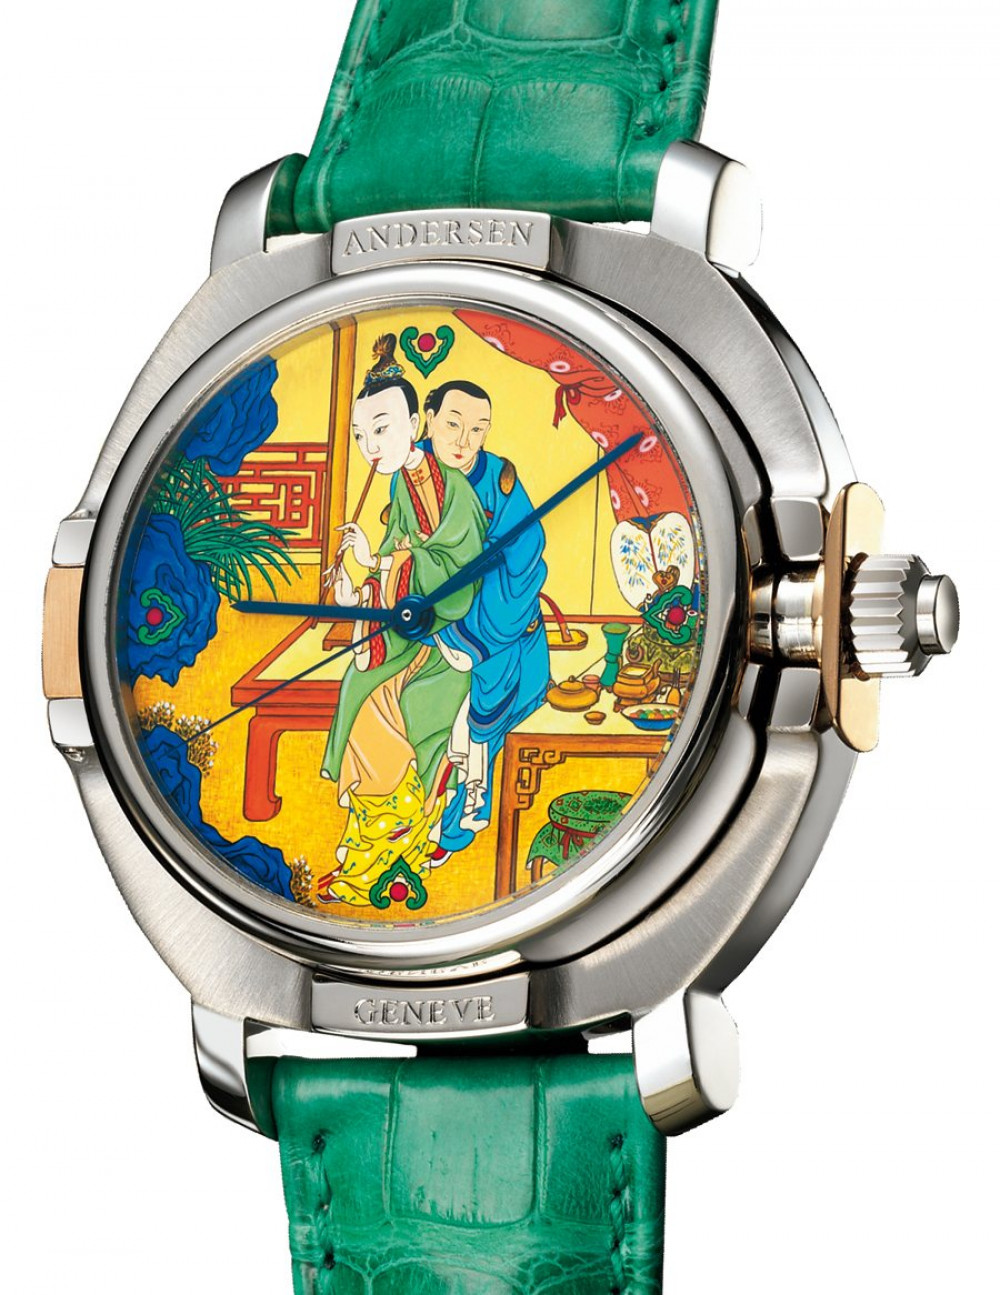 Zegarek firmy Andersen Geneve, model Eros 69